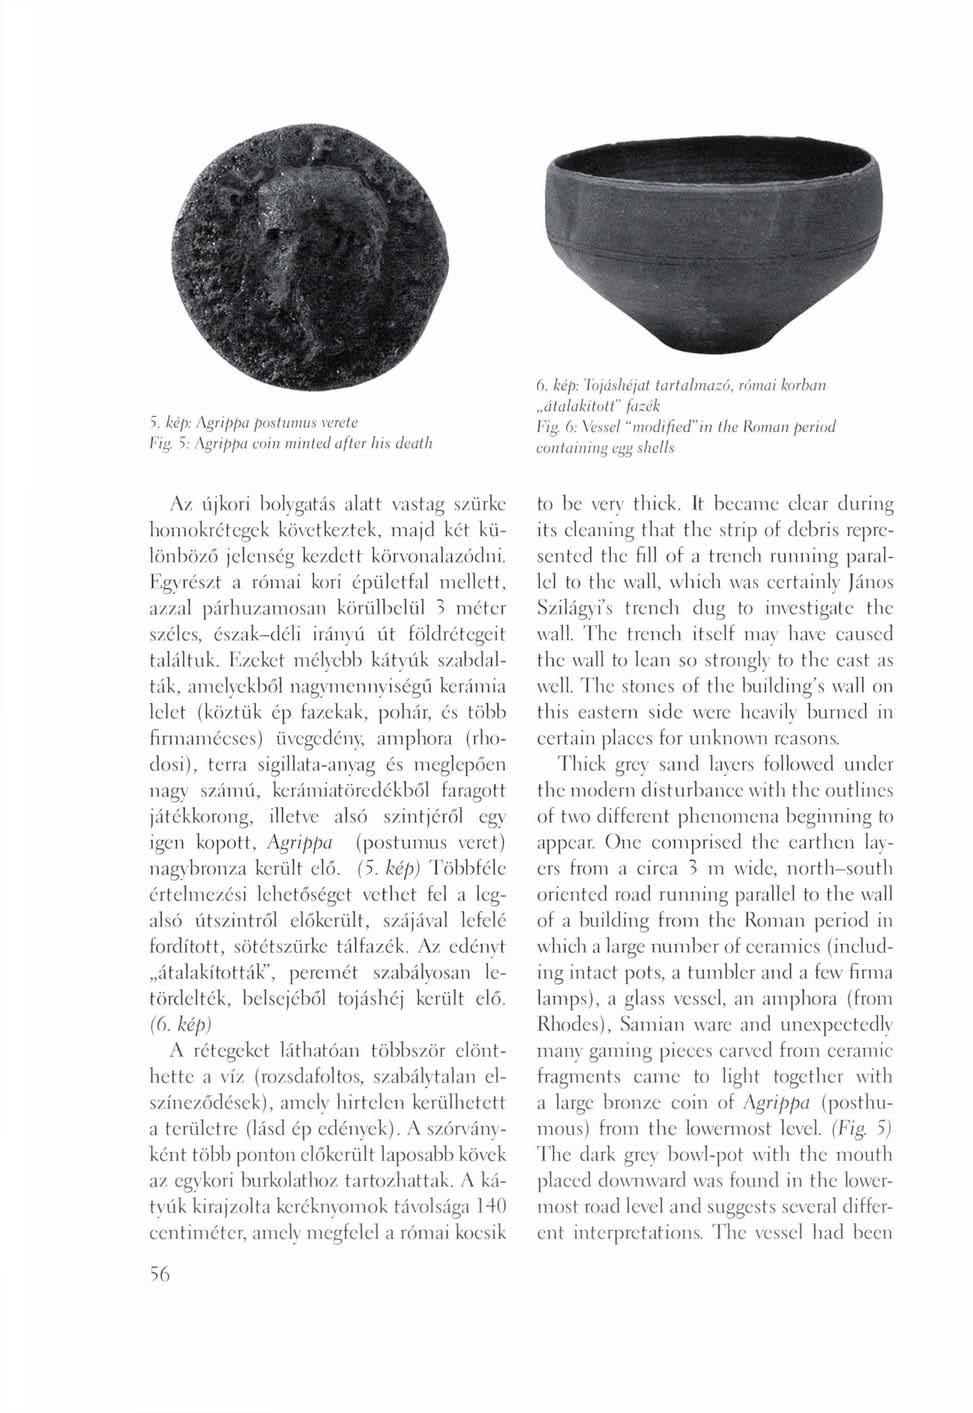 S. kép: Agrippa postumus vereté Fig. S: Agrippa coin minted after his death 6. kép: Tojáshéjat tartalmazó, római korban átalakított" fűzek Fig.